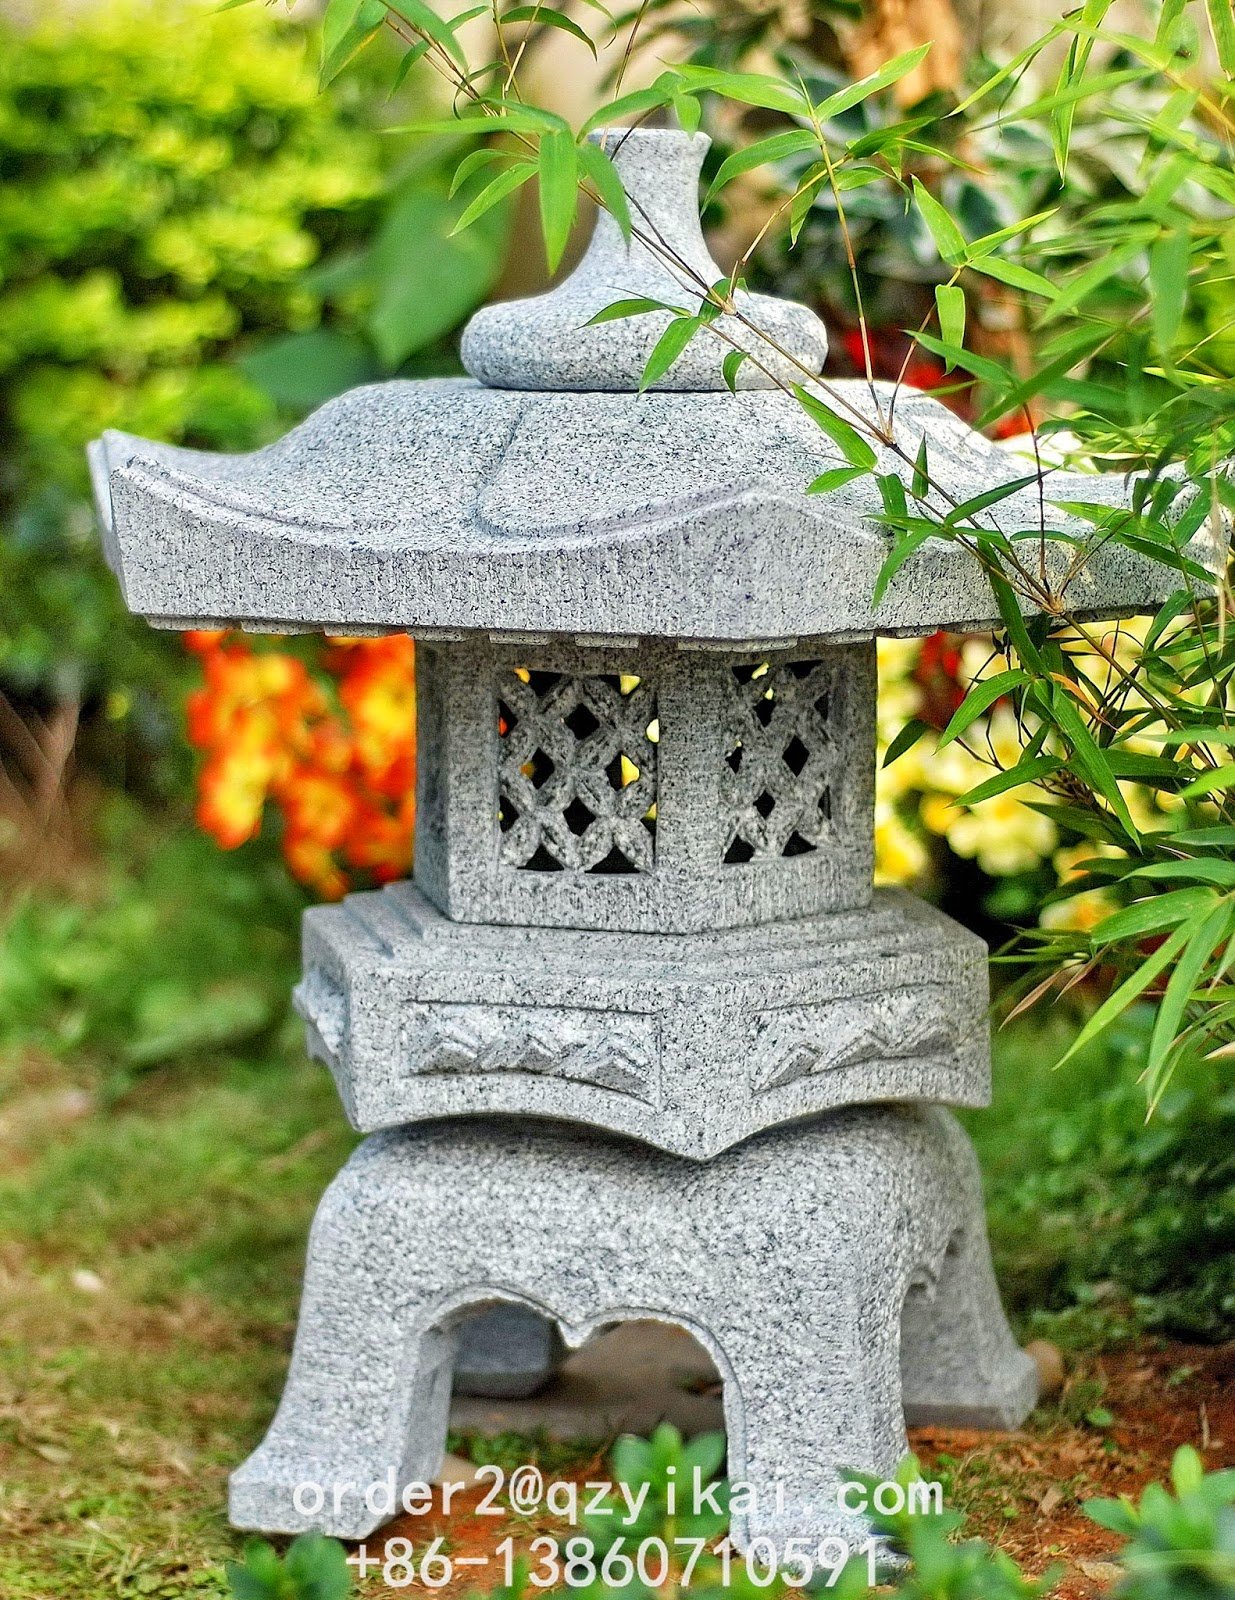 Японский садовый фонарь. Фонарь Юкими Торо. Японский фонарь цикубаи. Фонарь Касуга Торо. Каменные фонари в японском саду.